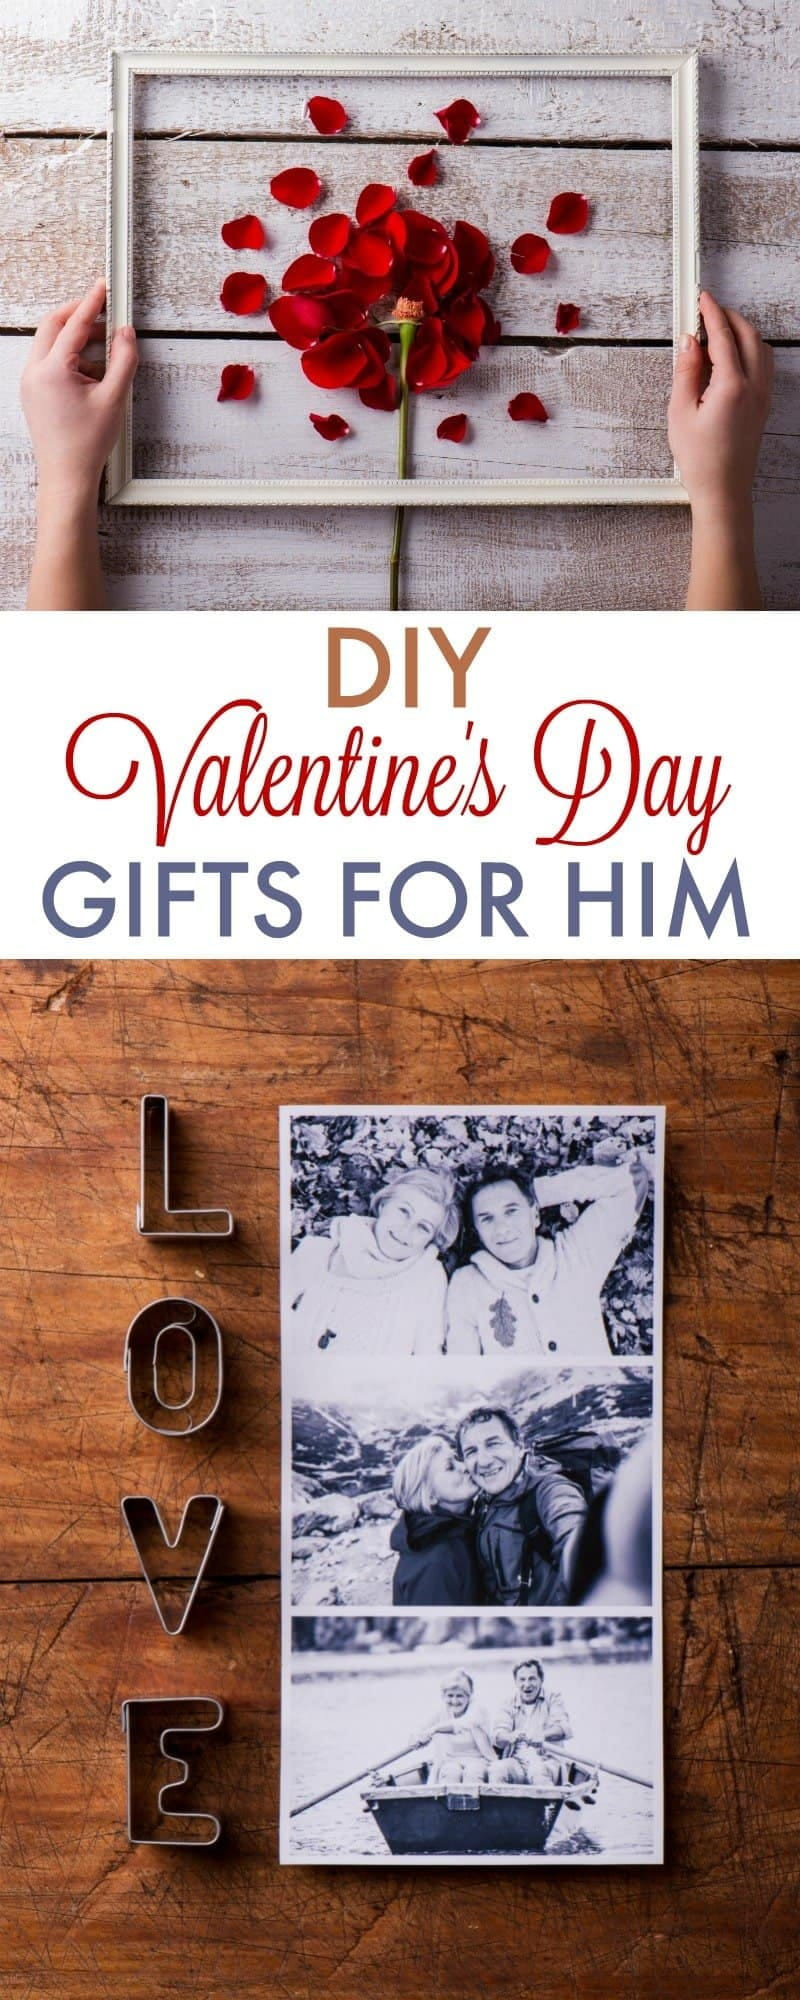 Gift Ideas For Boyfriend Valentines Day
 DIY Valentine s Day Gifts for Boyfriend 730 Sage Street